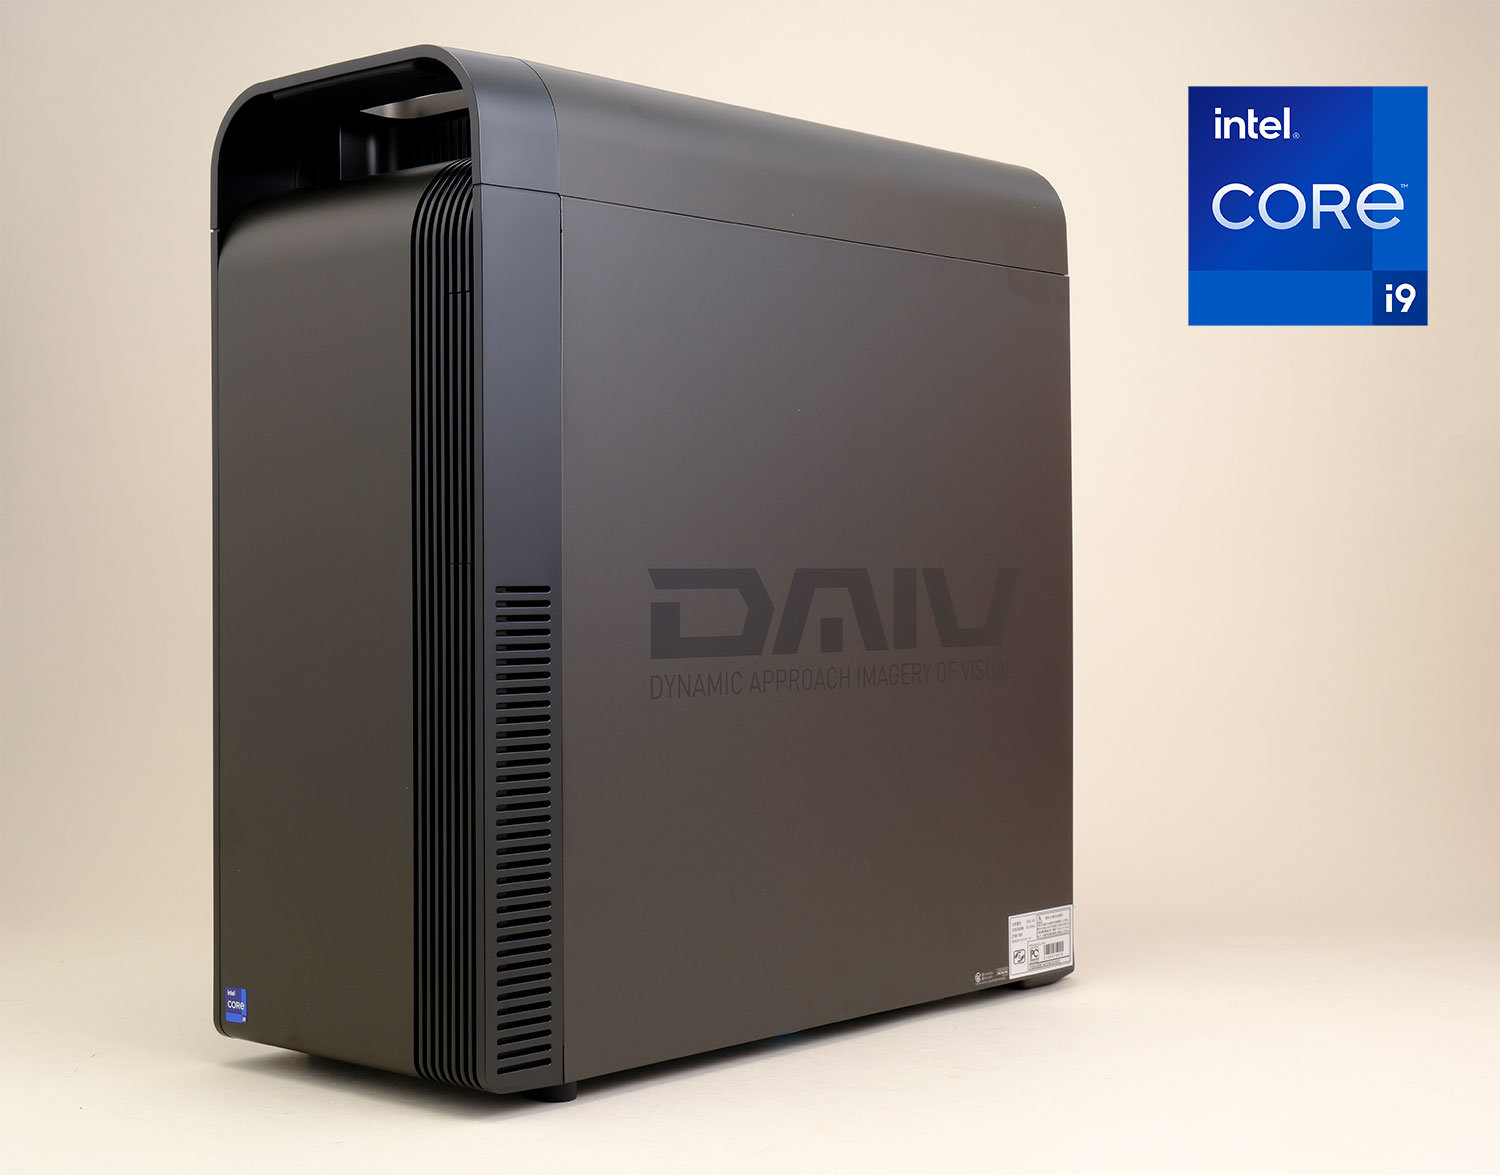 クリエイター向けPC DAIV(高性能ゲーミングPC) - デスクトップ型PC